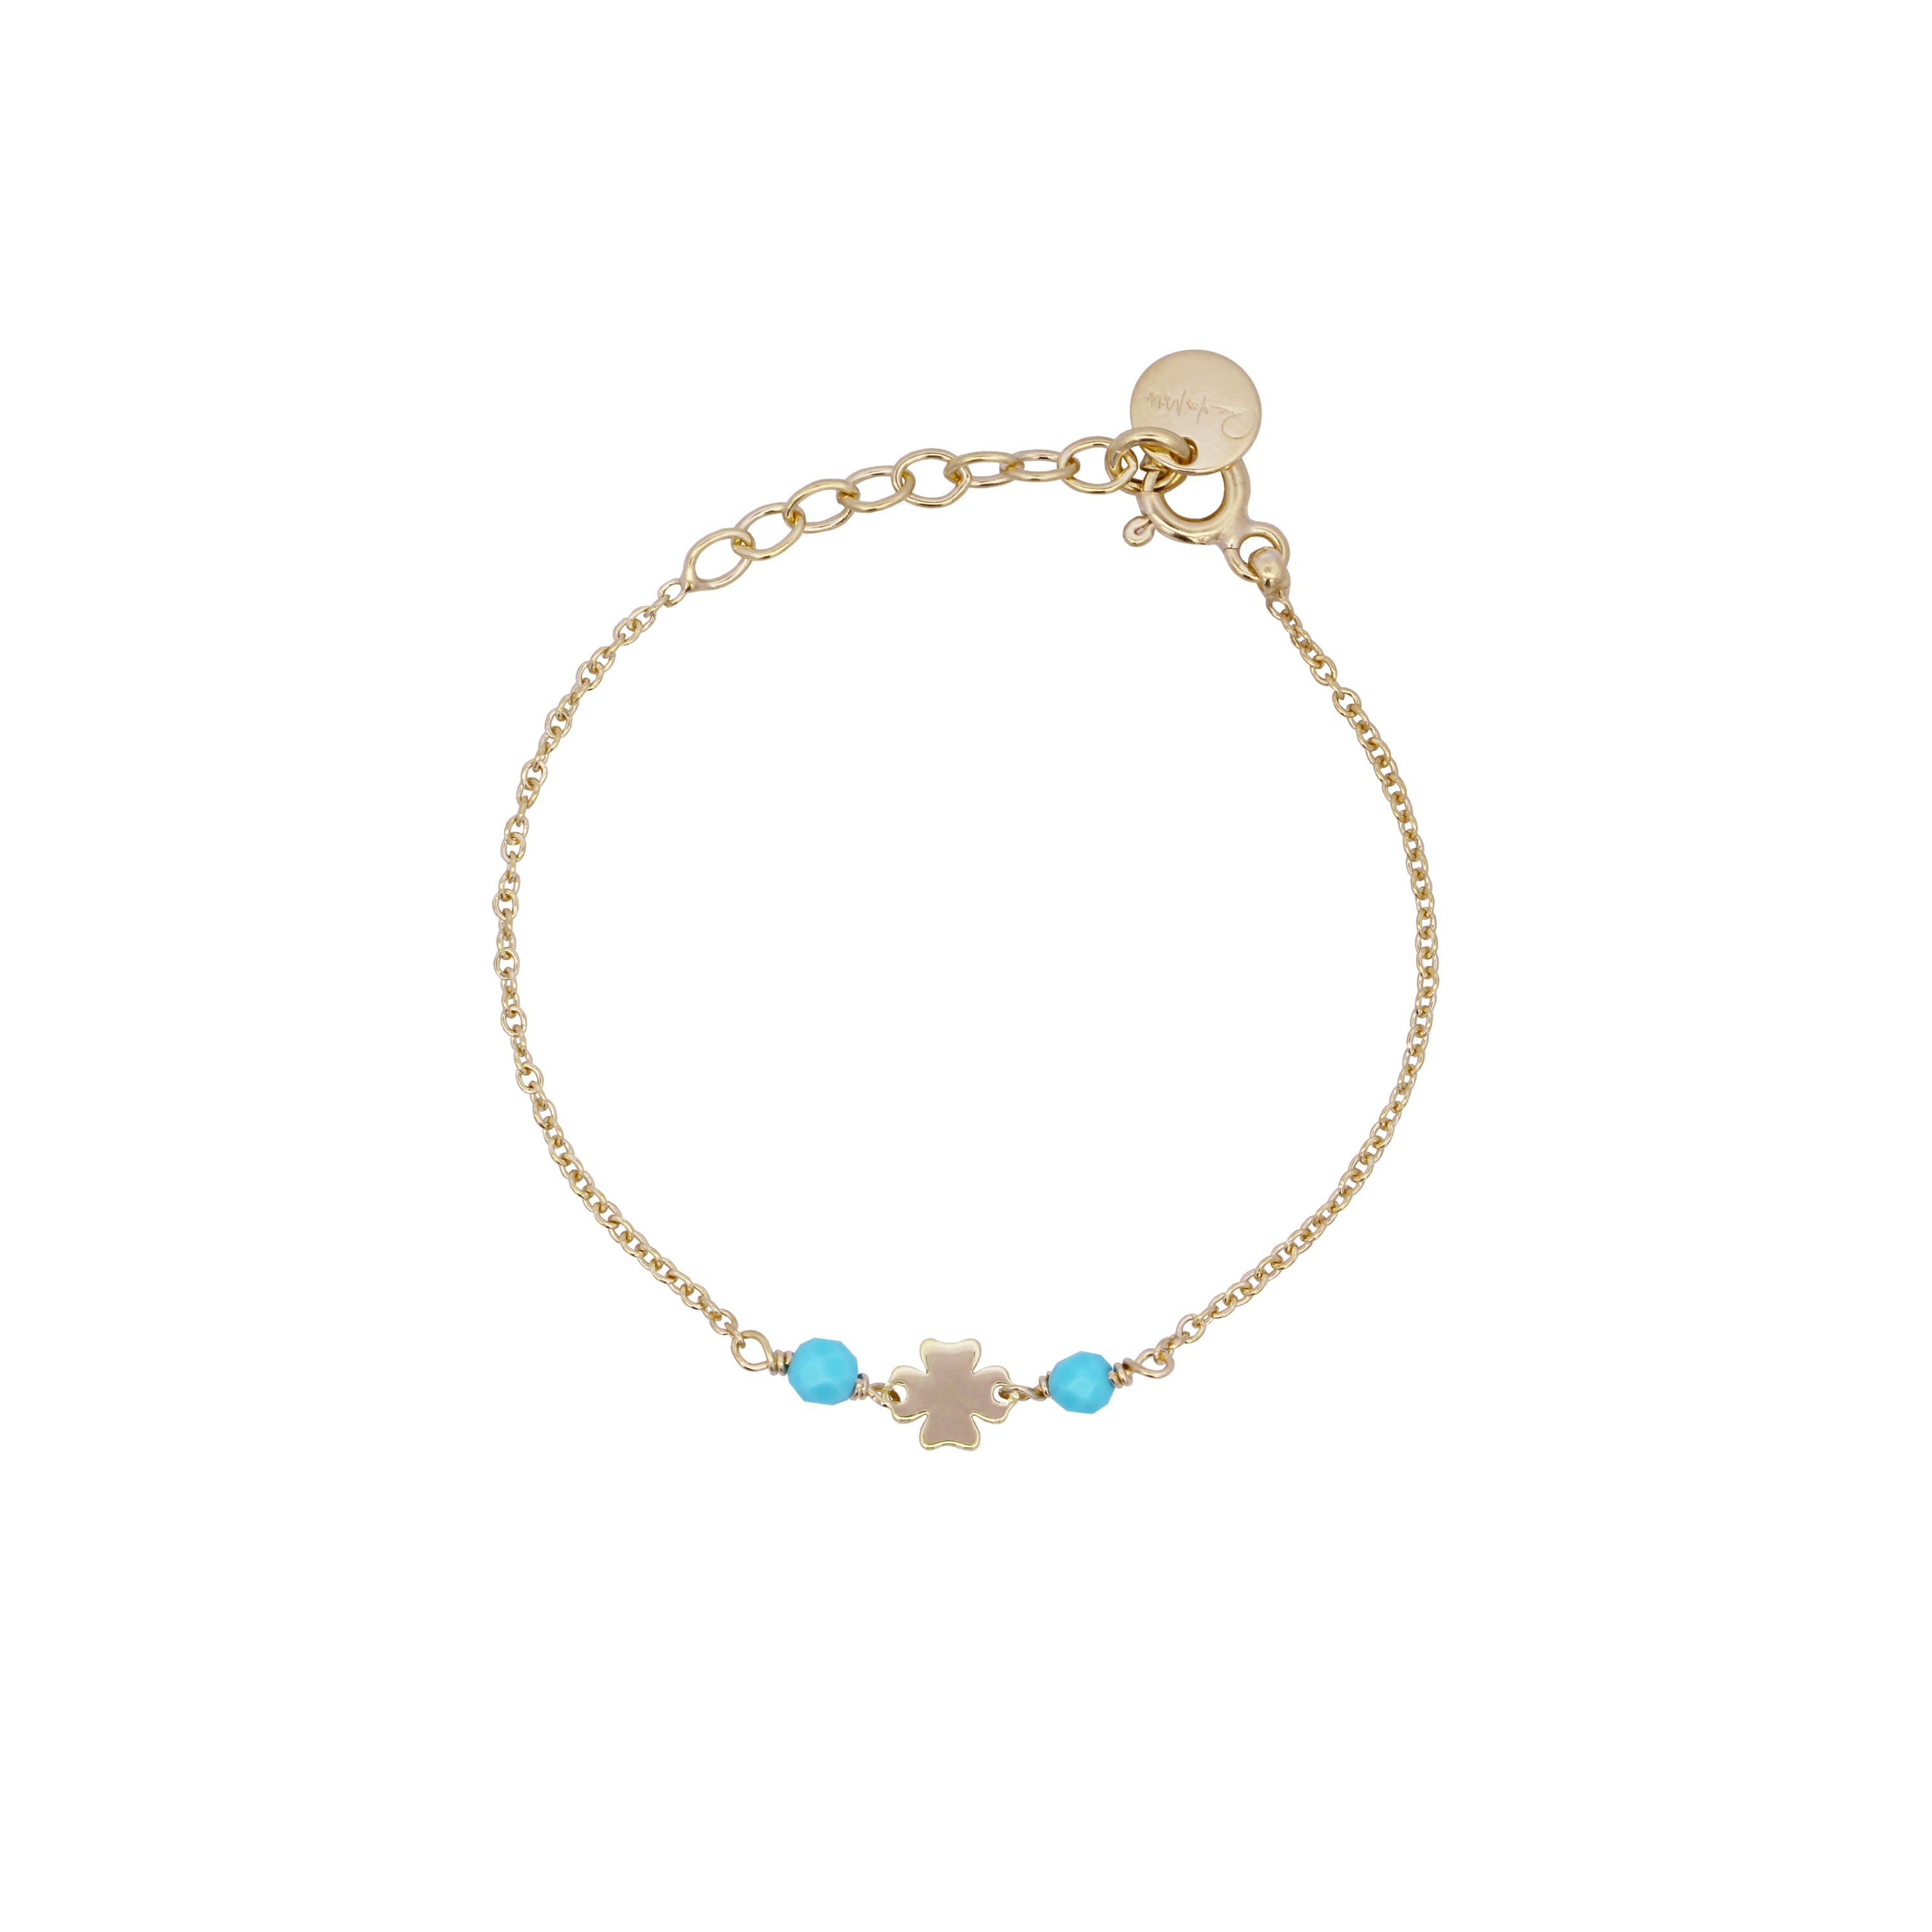 Bracelets - Four-leaf clover chain bracelet Turquoise stones Child - Io&Ro - 1 | Rue des Mille